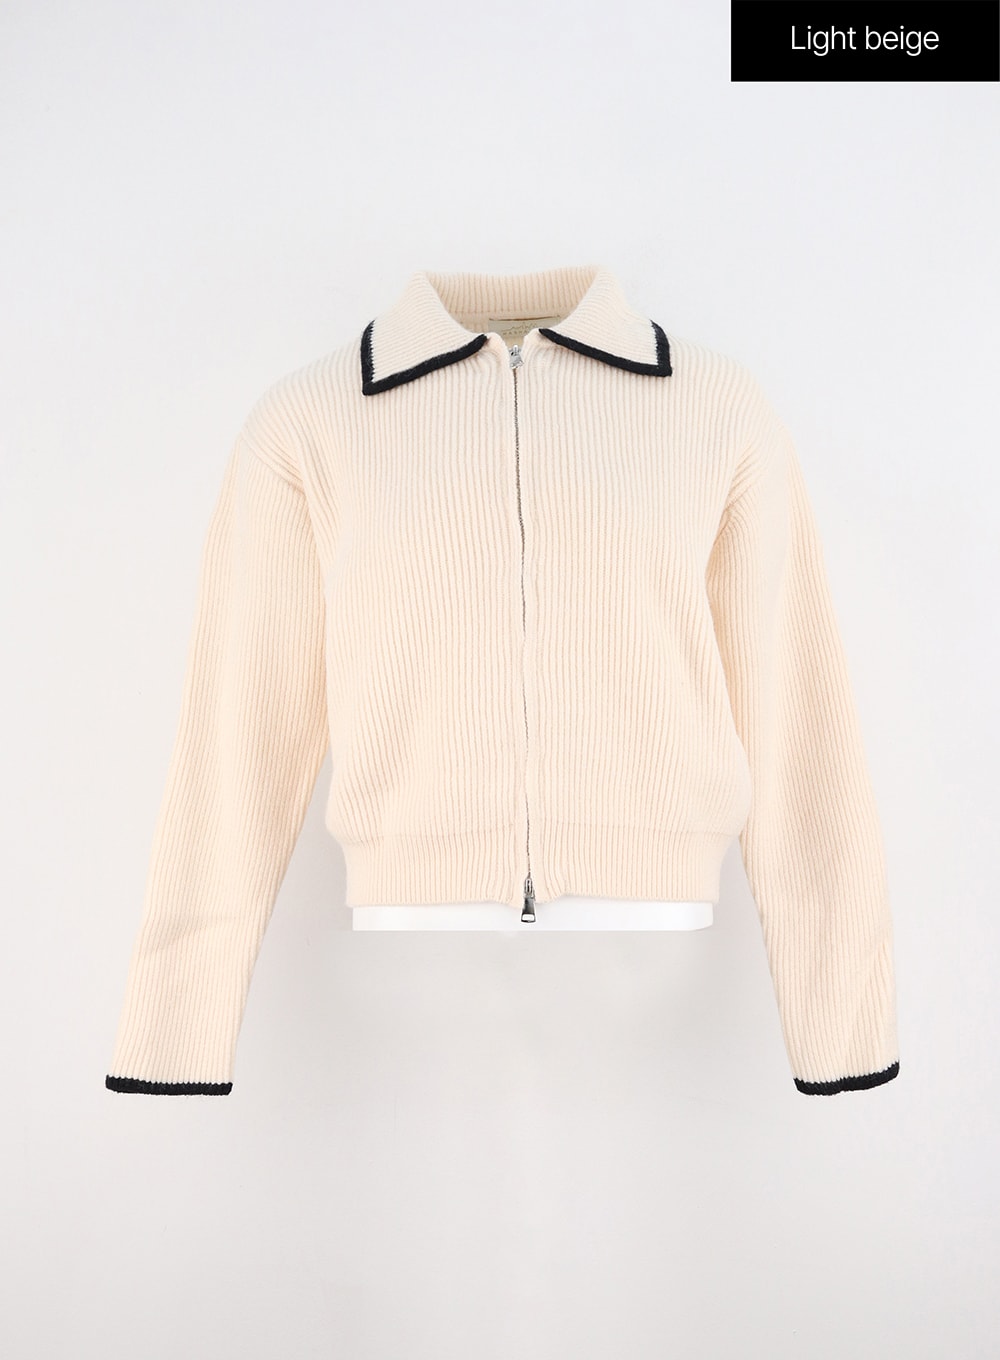 collared-zip-up-sweater-oo323 / Light beige